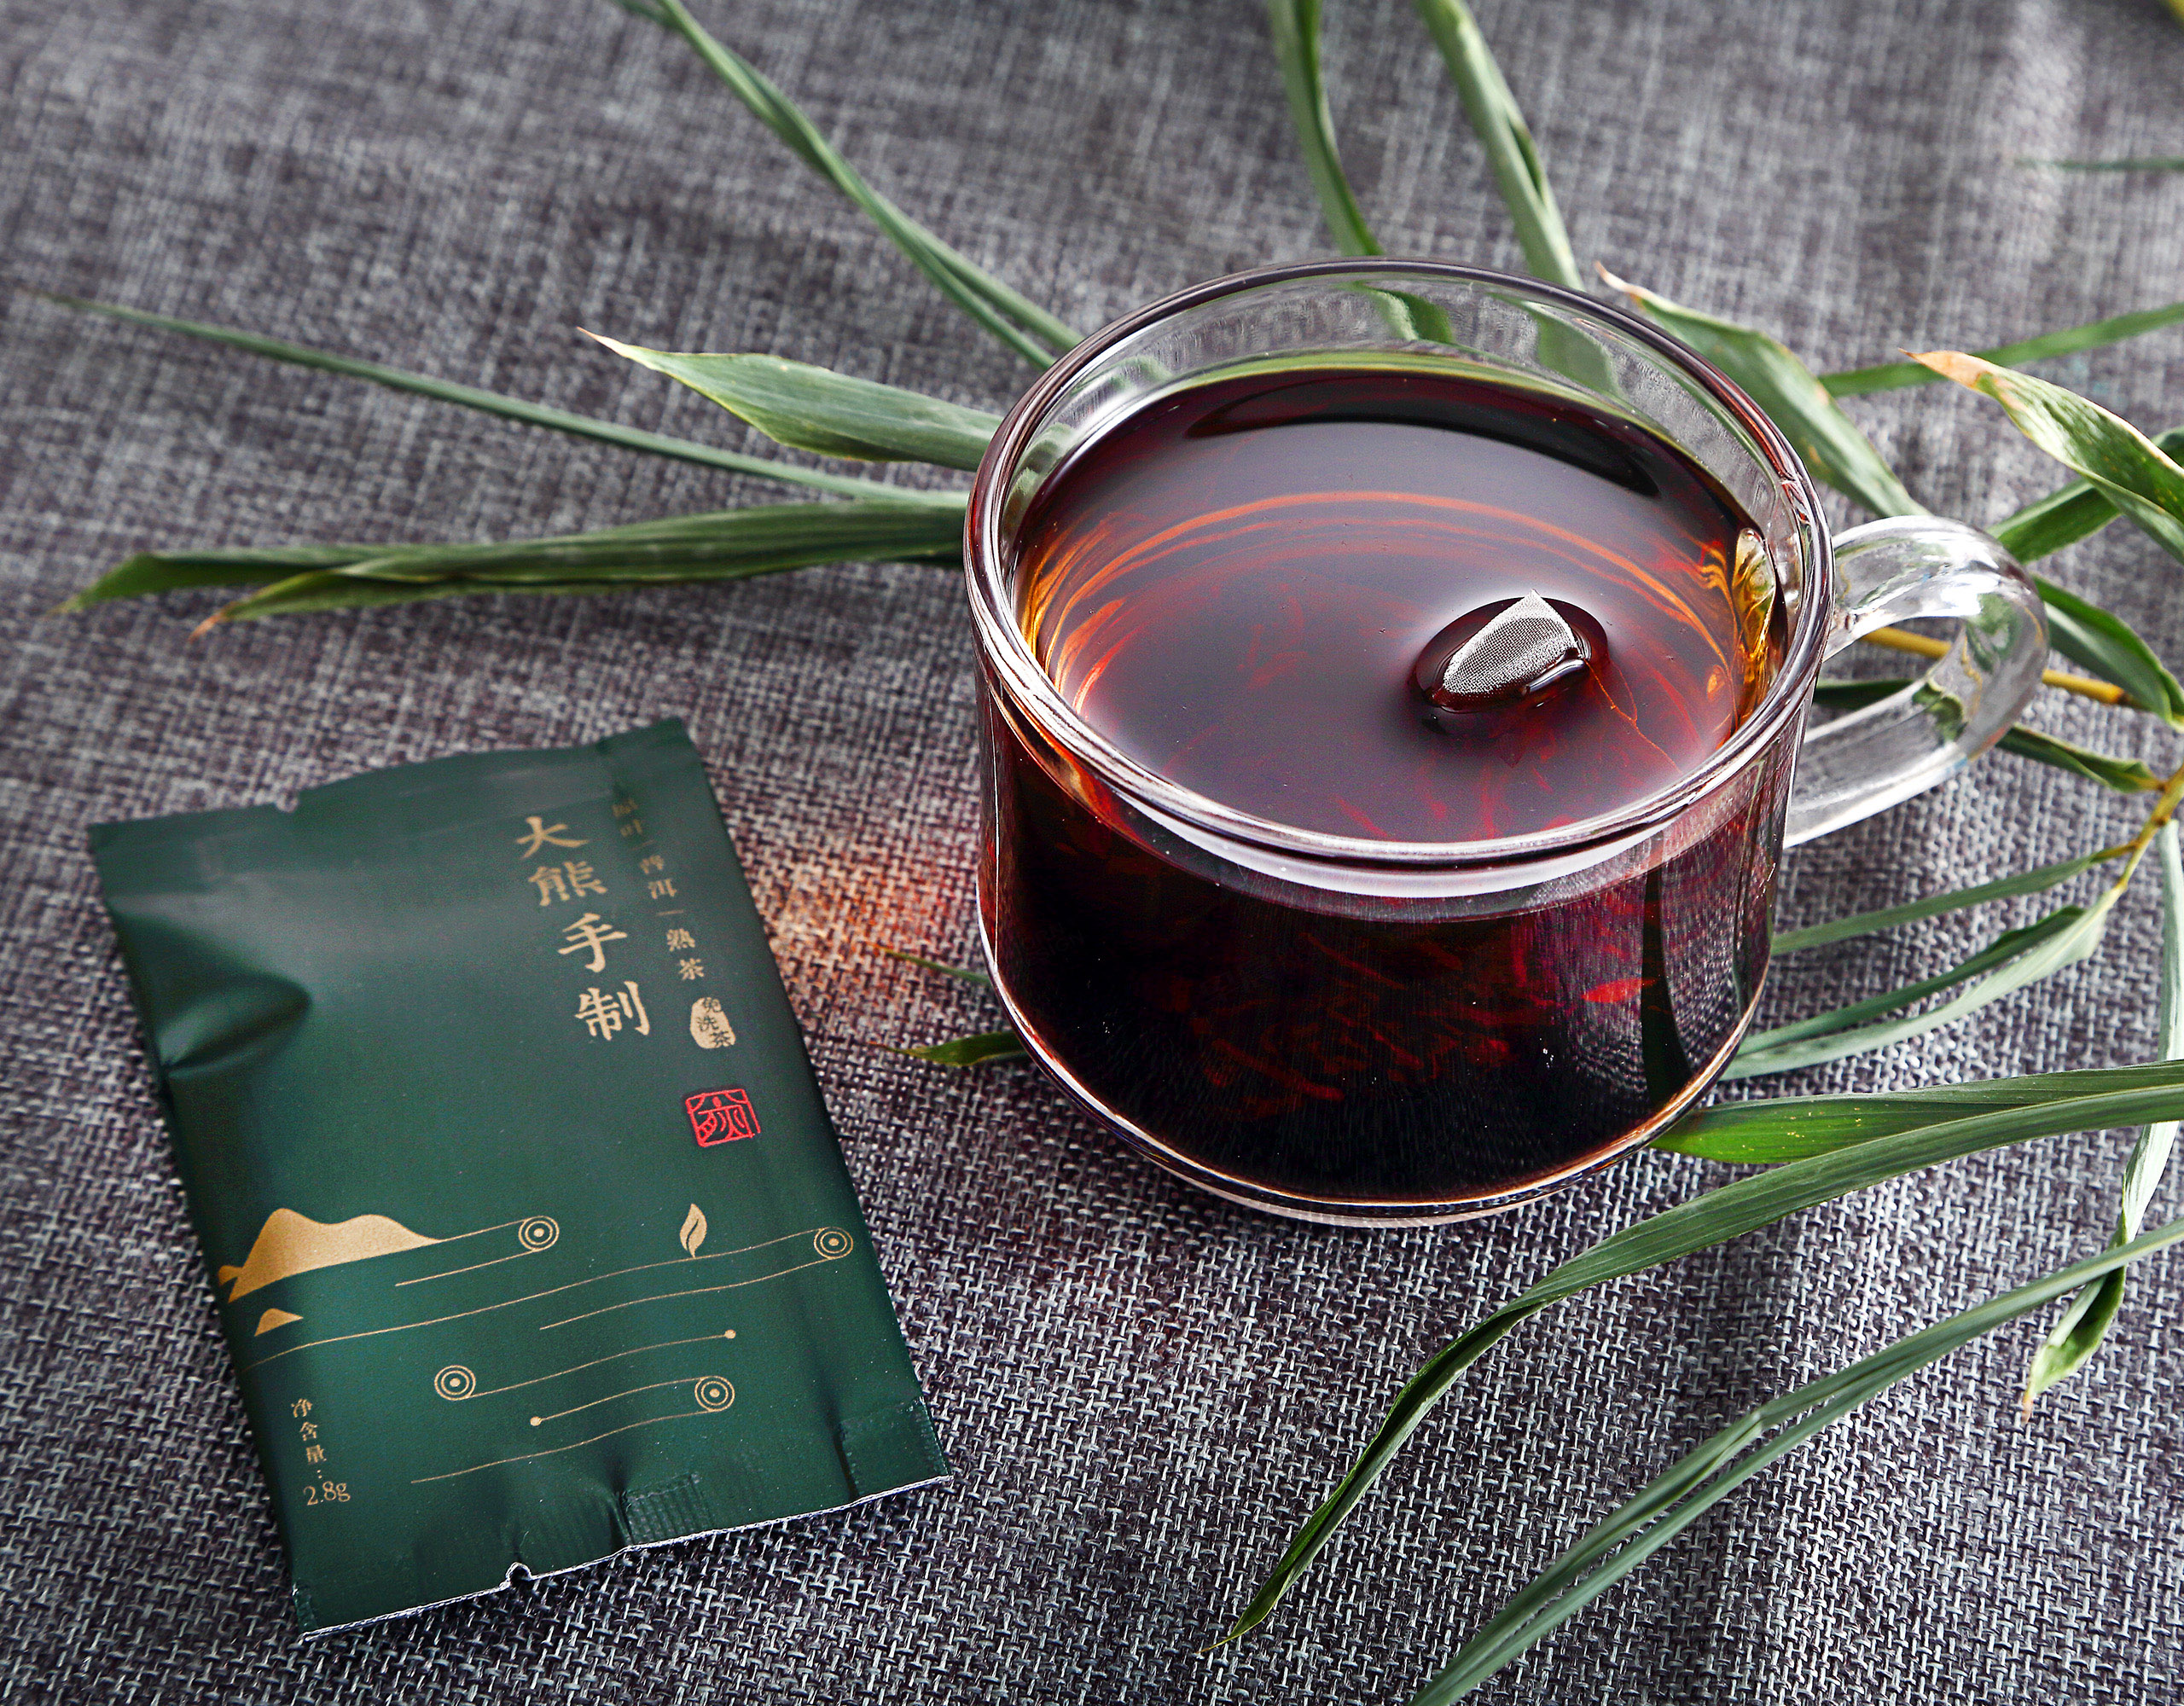 茶产品拍摄,摄影,电商产品拍摄,电商形象摄影,苏州,无,常州,南通,泰州,镇江,南京,扬州,大熊茶产品电商产品图片拍摄,公司